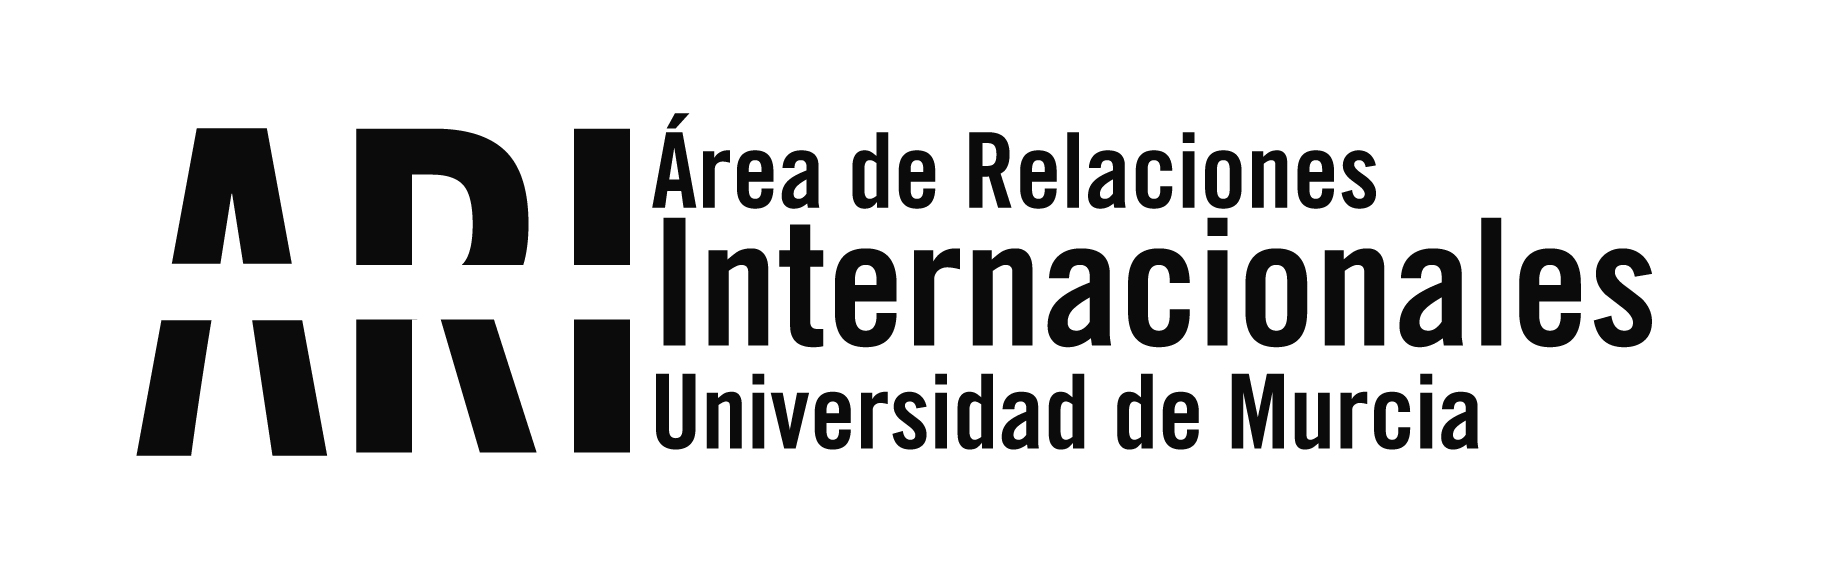 Charlas informativas convocatoria ILA (Intercambio con Latinoamérica) 2021/22 - Charlas informativas convocatoria ILA (Intercambio con Latinoamérica) 2021/22 - Área de Relaciones Internacionales